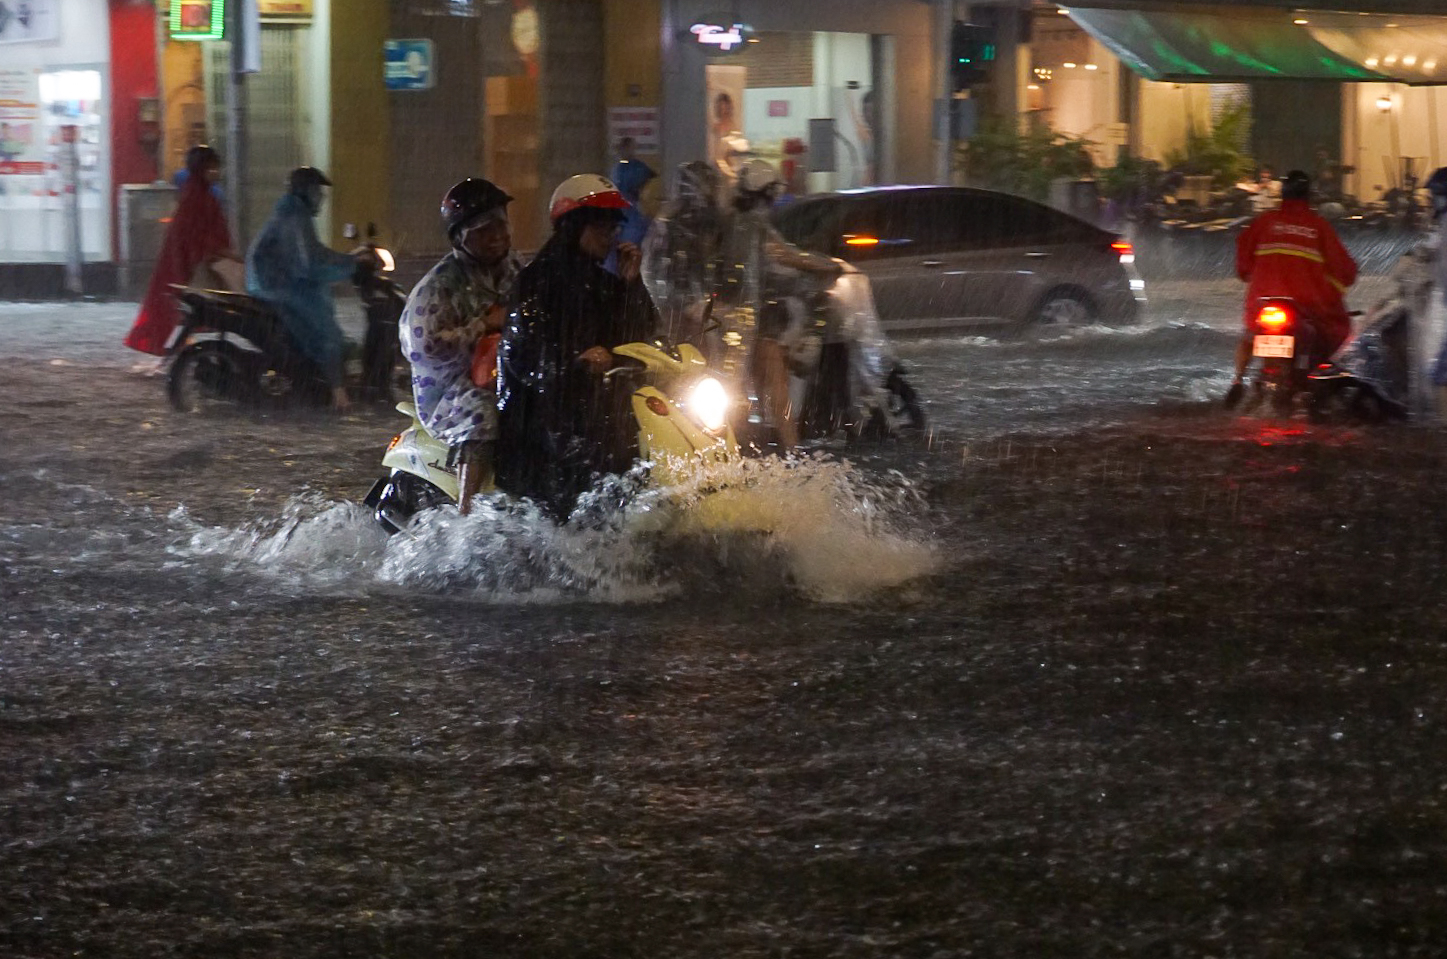 Đường phố Đà Nẵng ngập cục bộ sau mưa lớn, người dân chật vật lội nước về nhà - Ảnh 2.